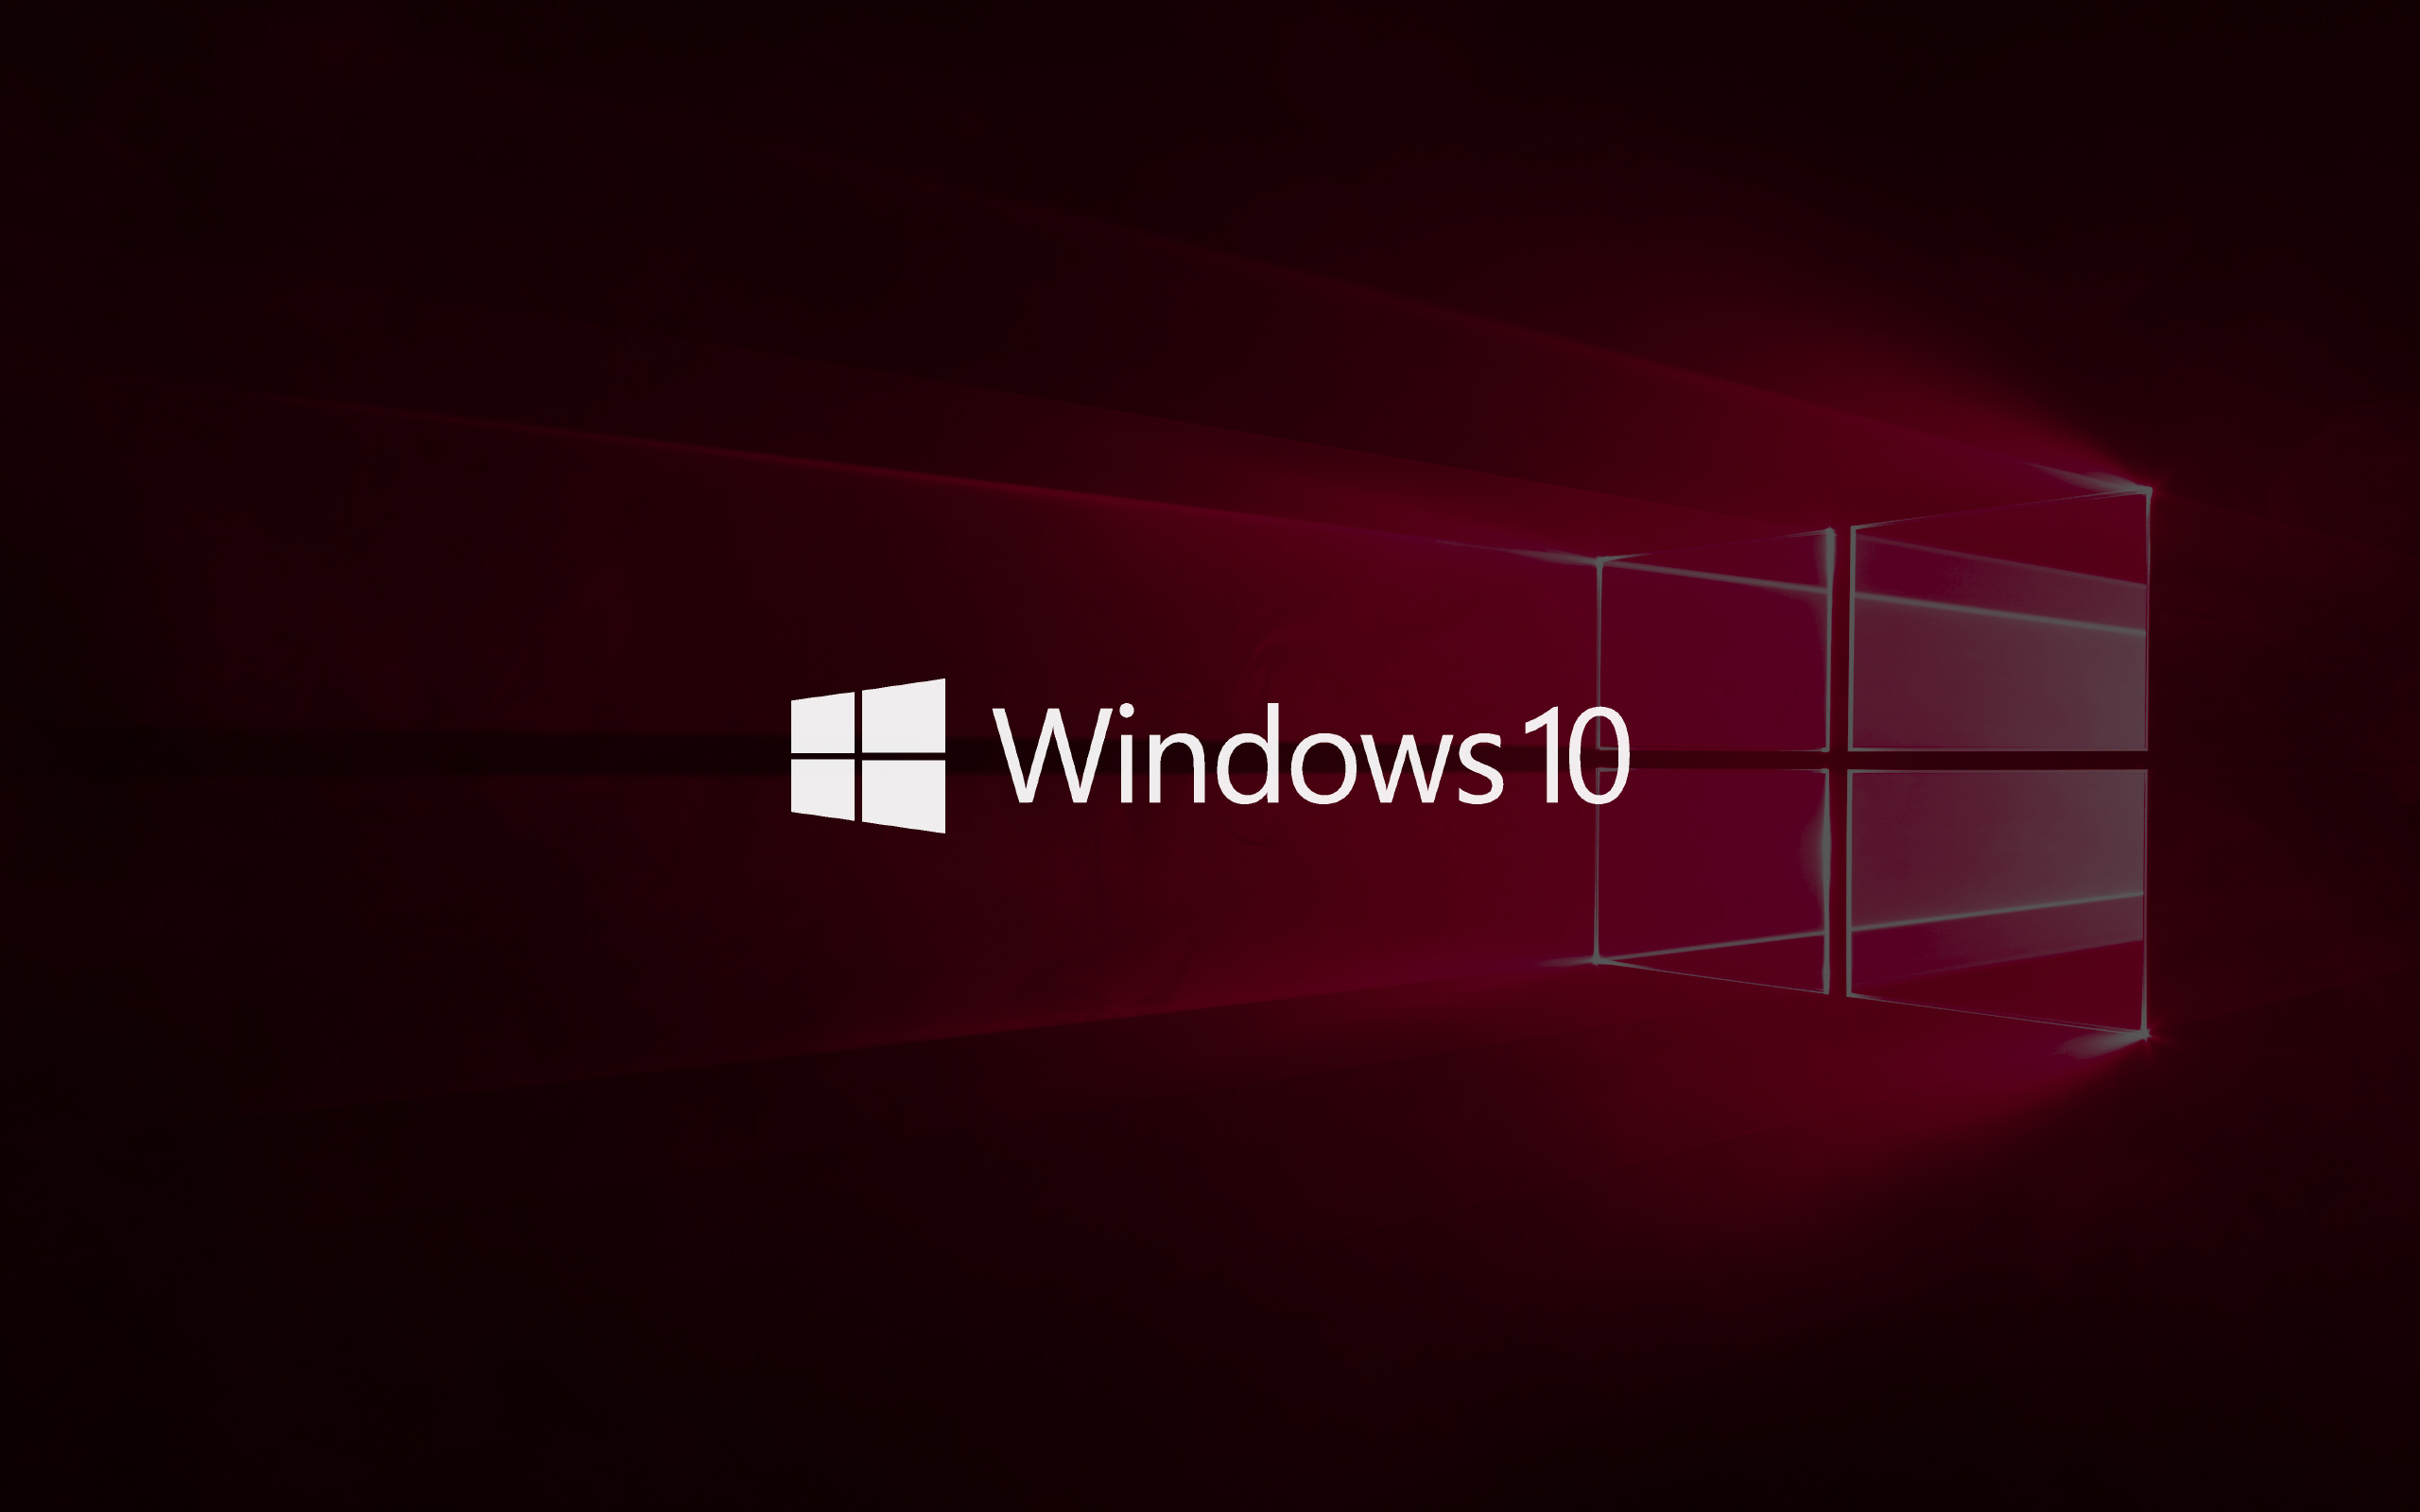 Windows 10 19H1 come installare windows 10 da zero